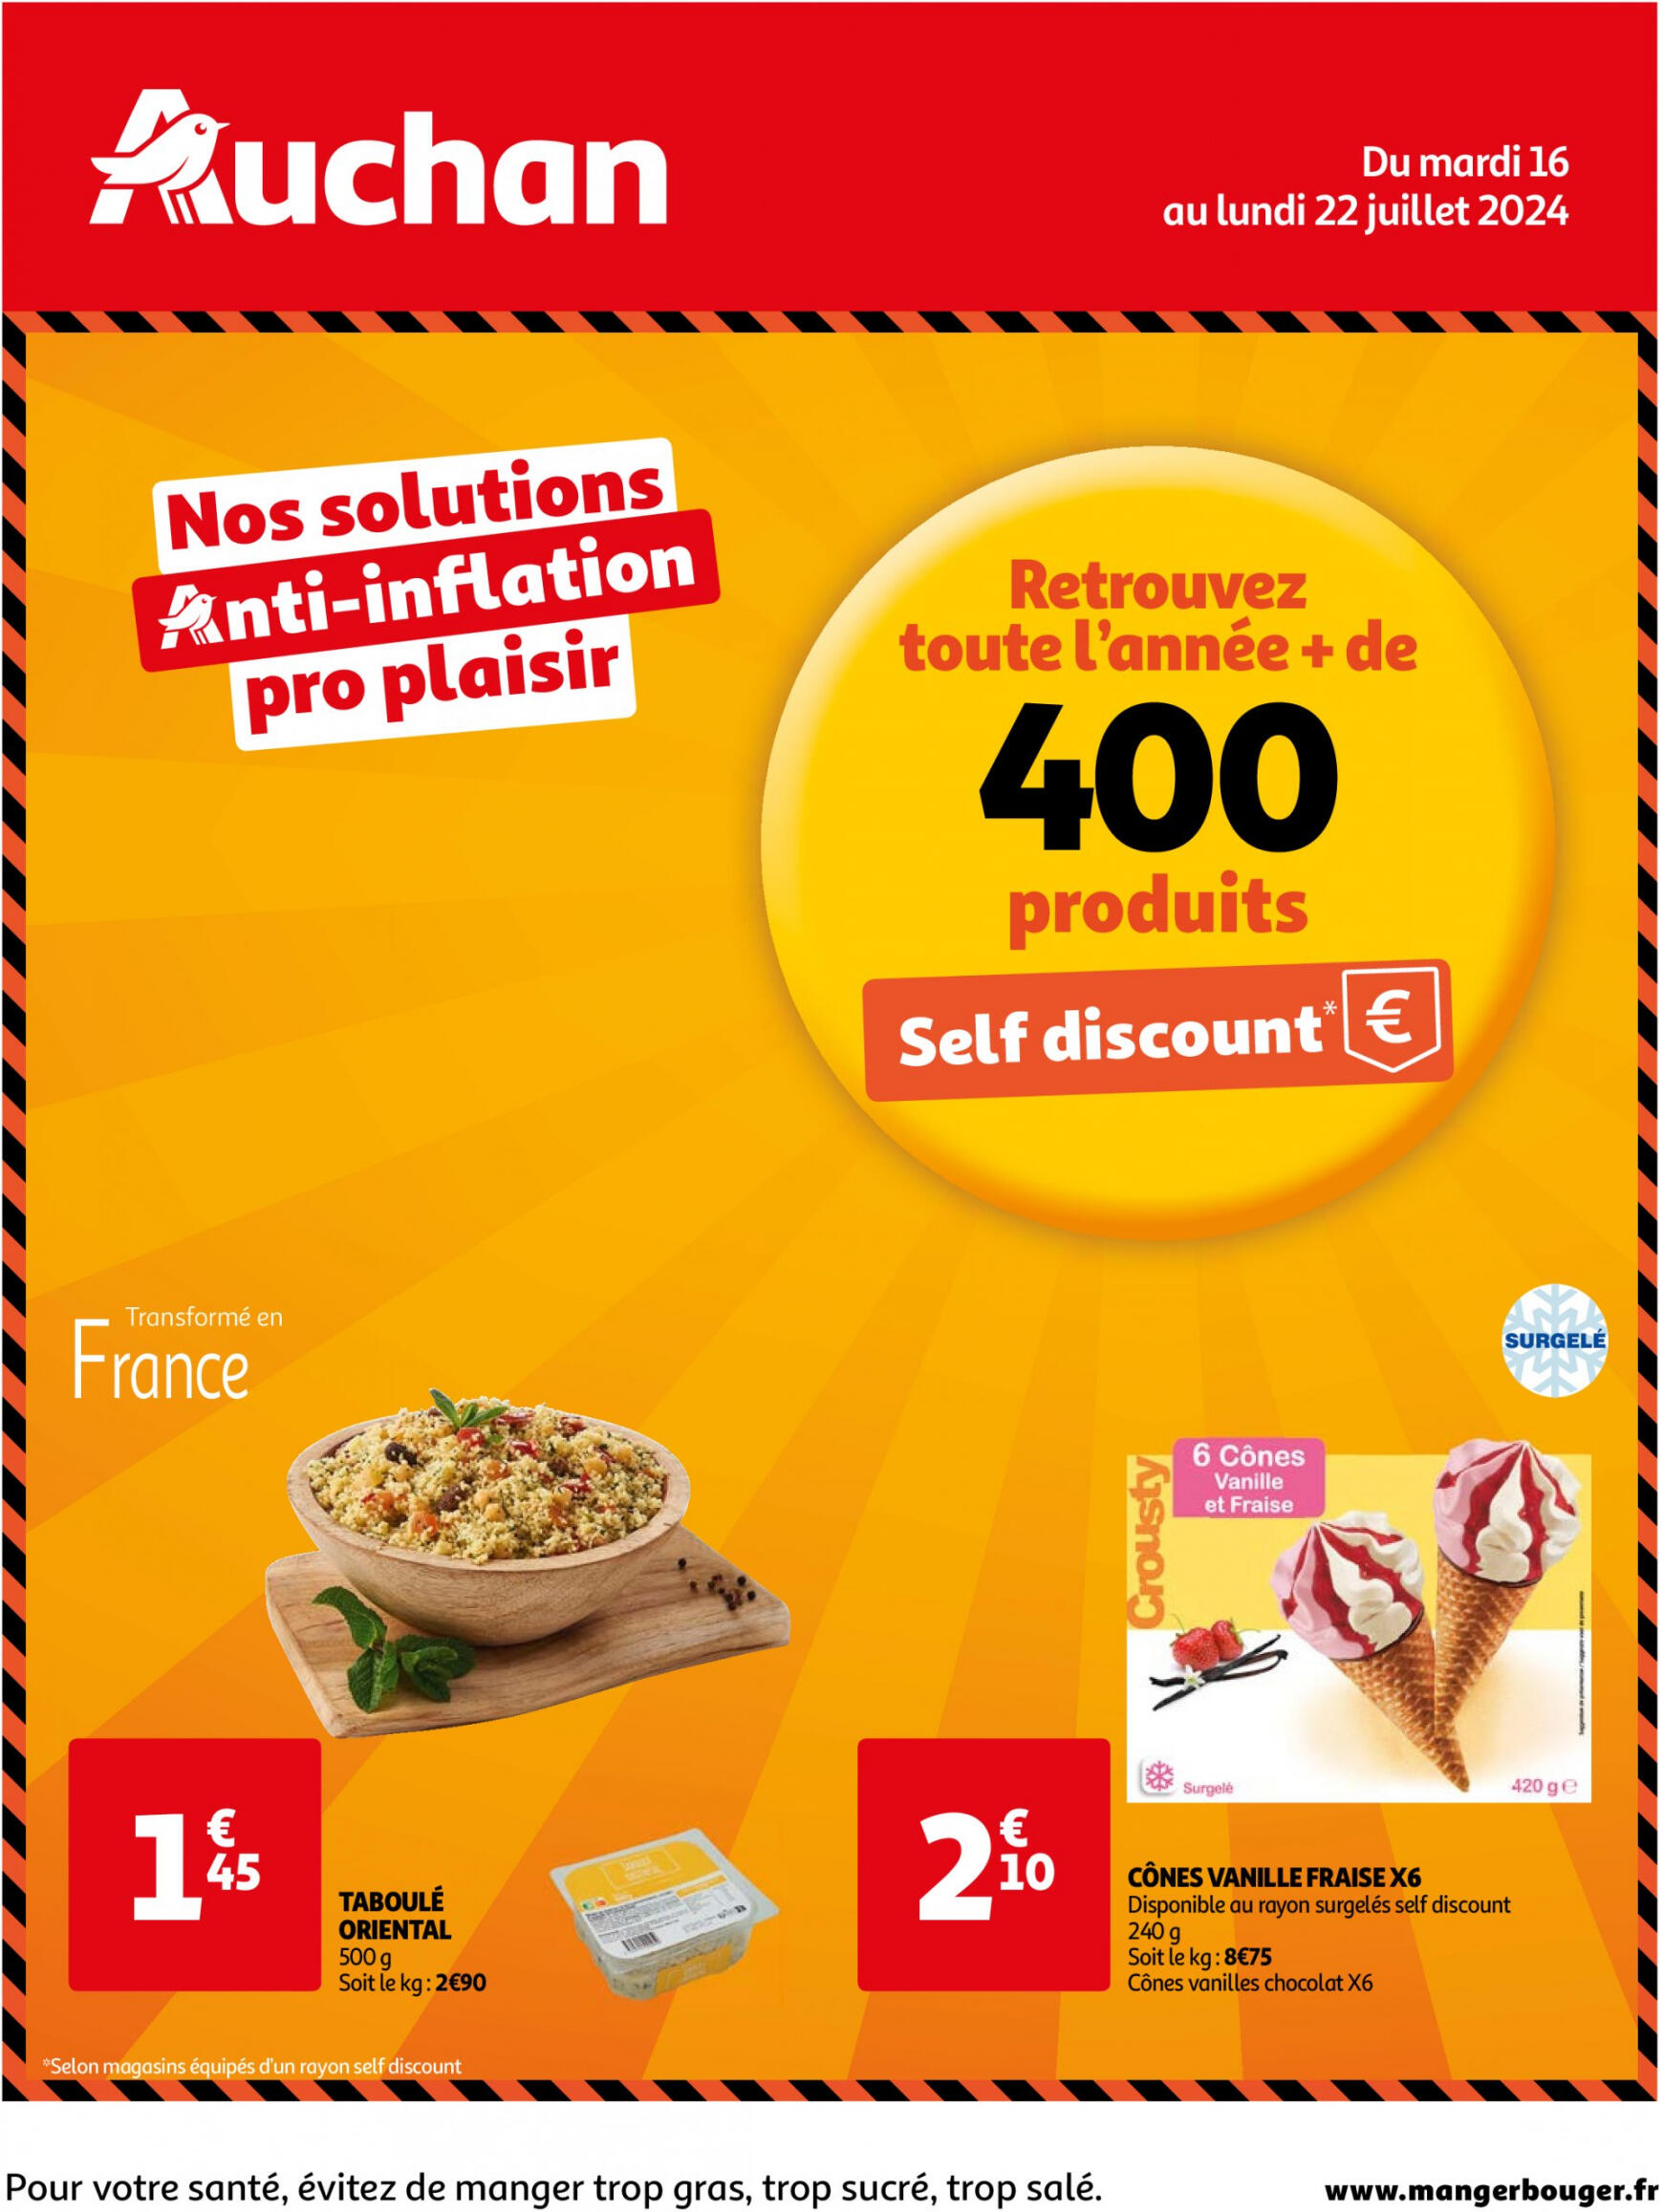 auchan - Prospectus Auchan - Nos solutions anti-inflation pro plaisir actuel 16.07. - 22.07.